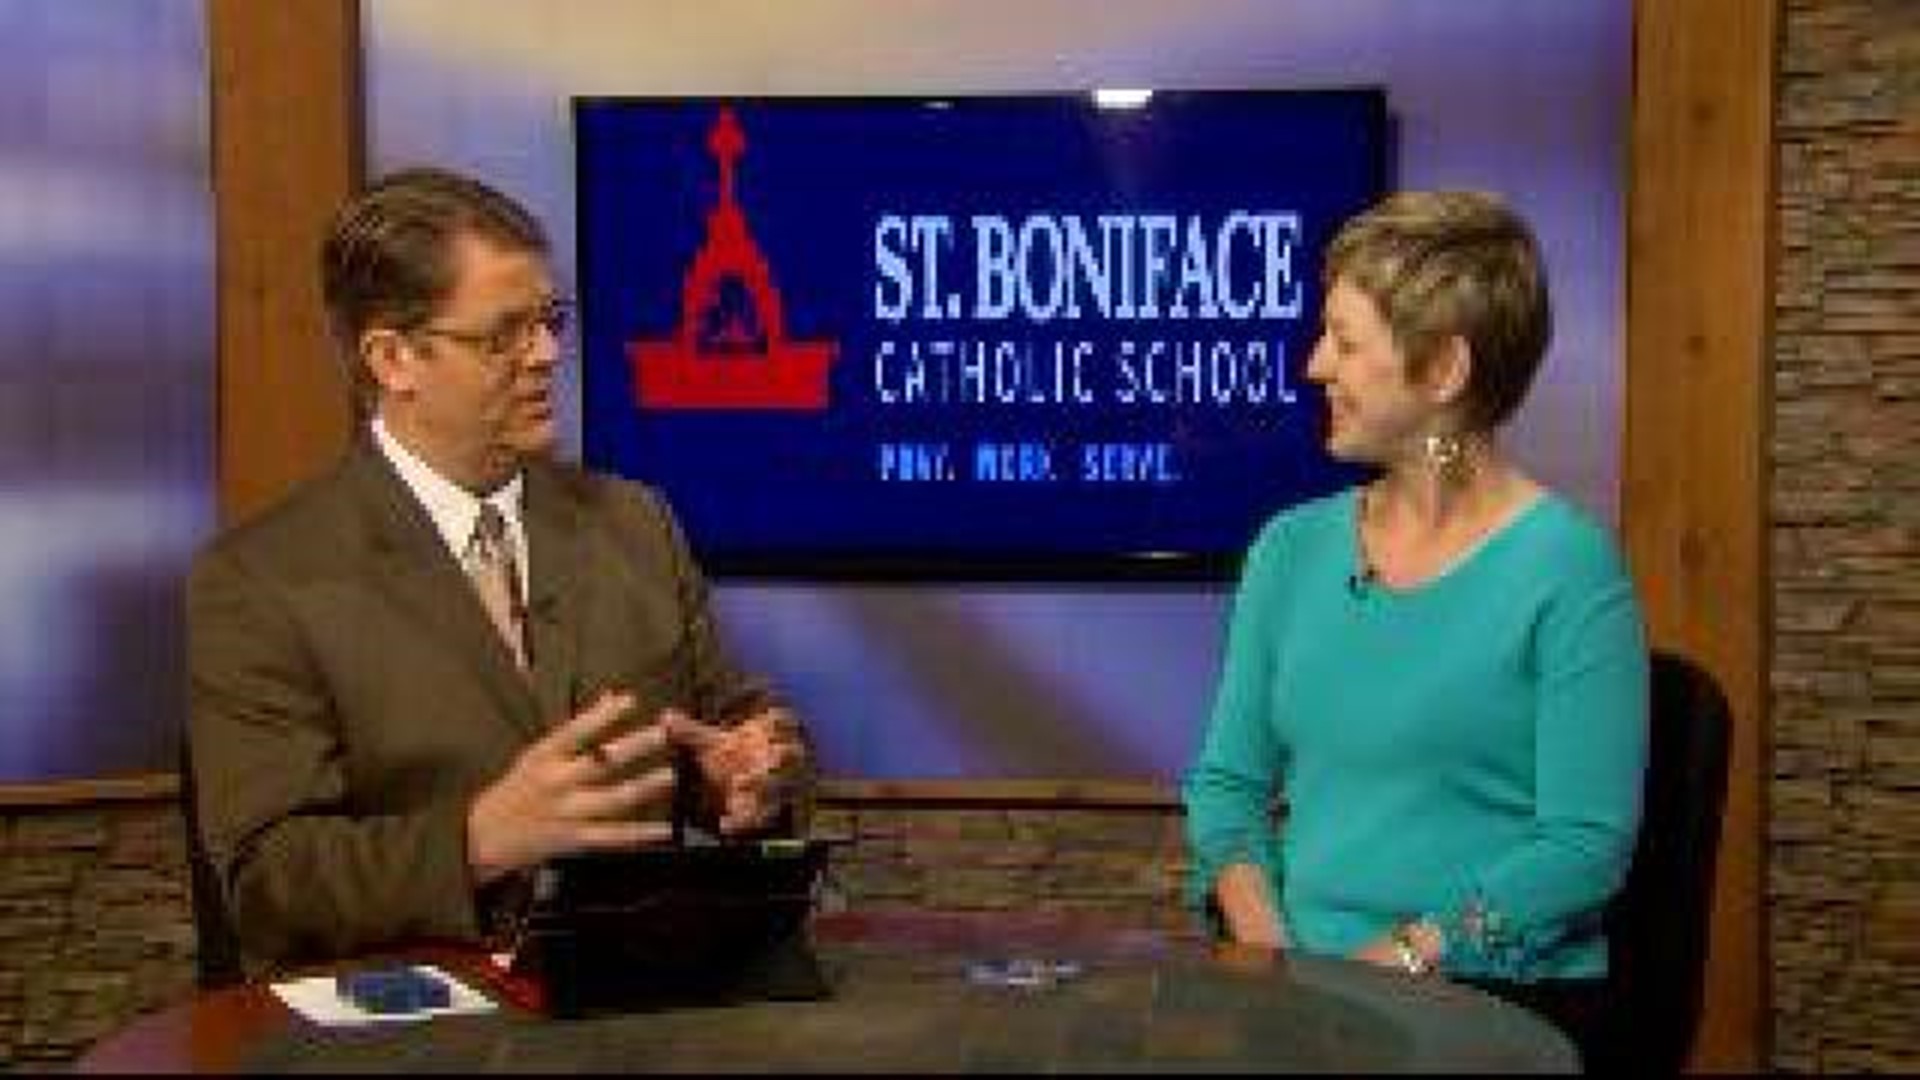 St Boniface Catholic School: Crawfish Boil and Zydeco Party